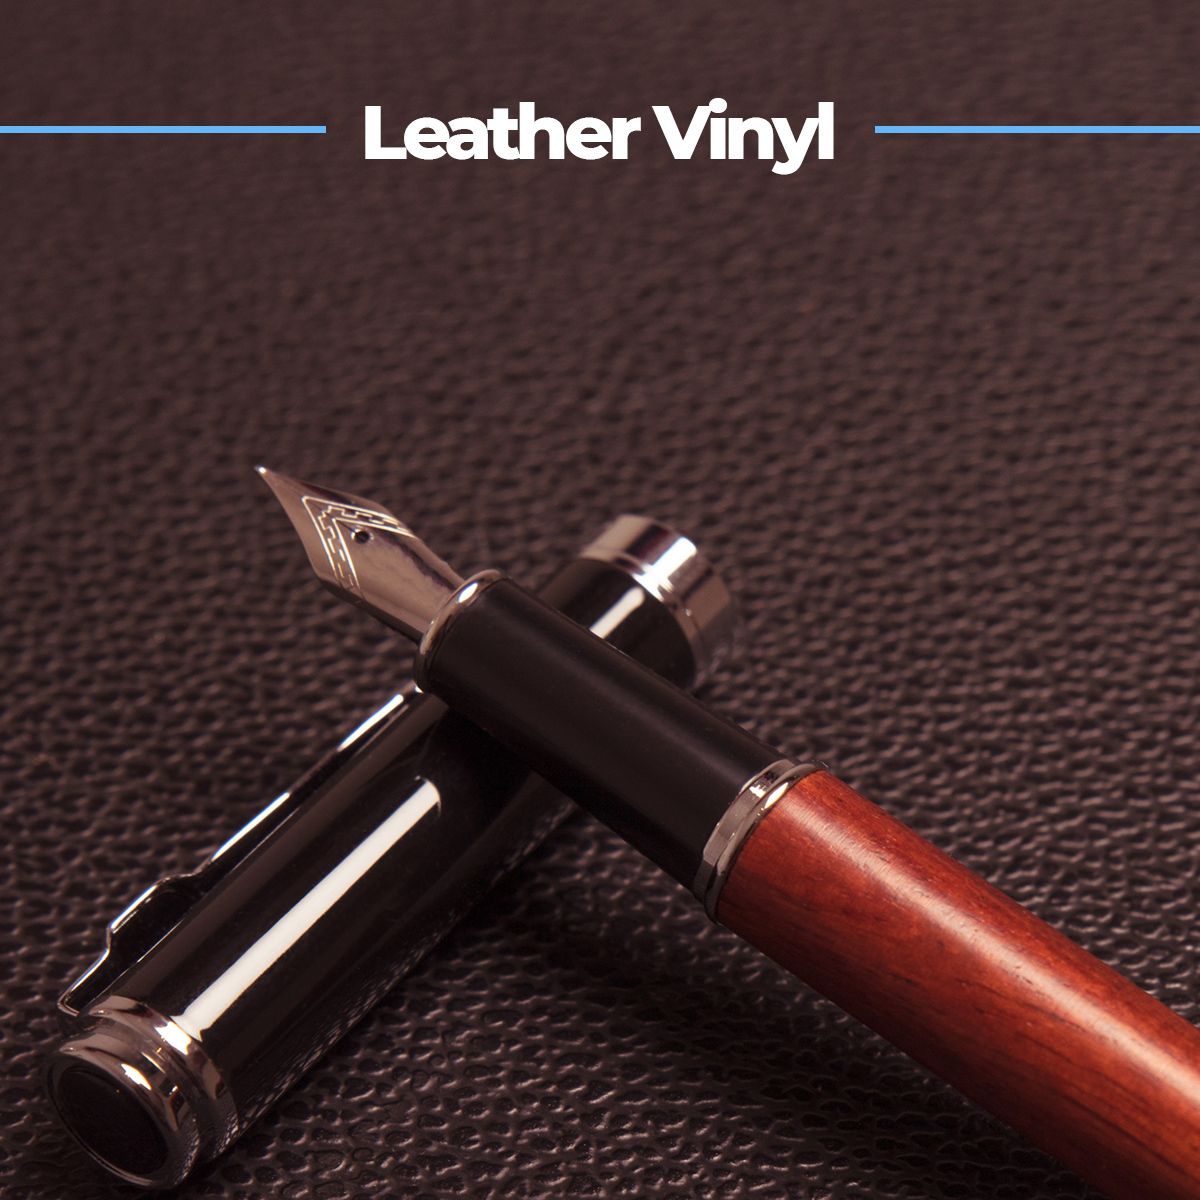 Leather Vinyl